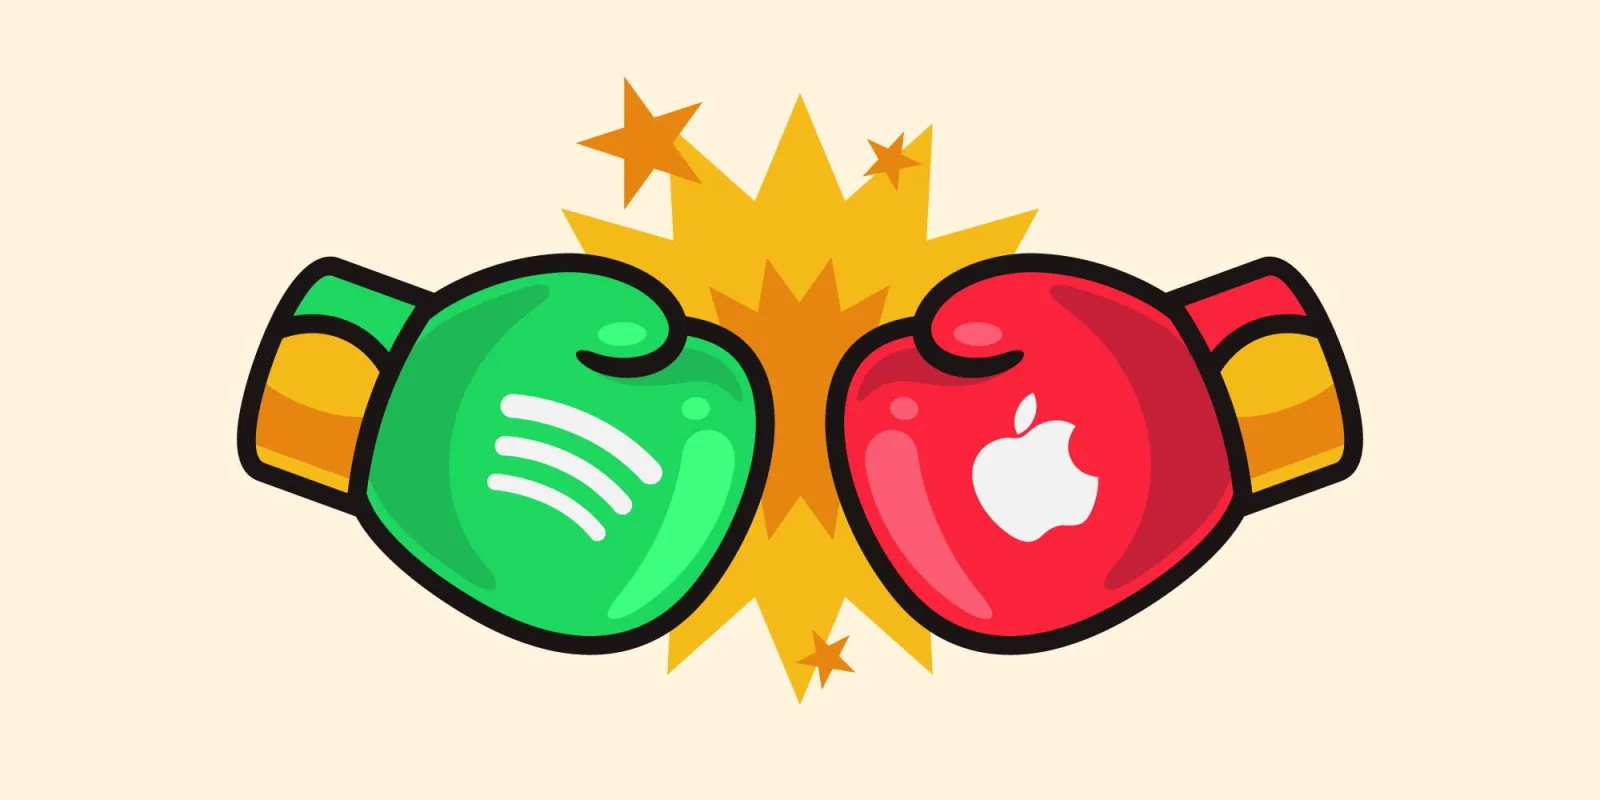 Apple blocca l'ultimo aggiornamento di Spotify su App Store: continua la disputa sullo streaming musicale